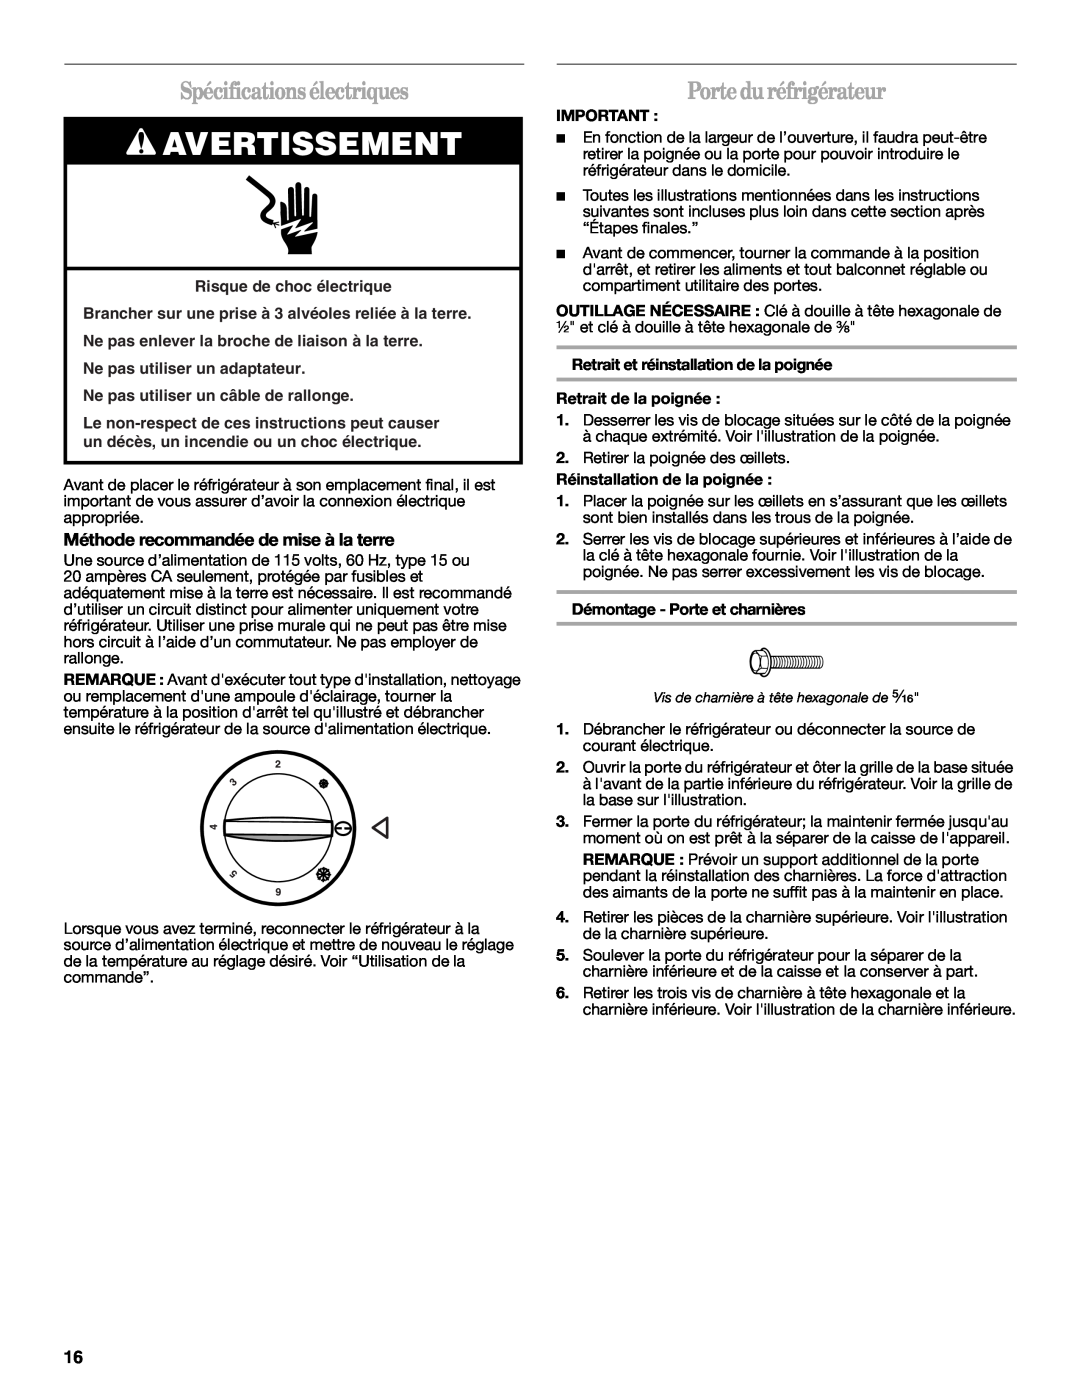 Whirlpool W10326802B manual Spécificationsélectriques, Porte du réfrigérateur, Méthode recommandée de mise à la terre 